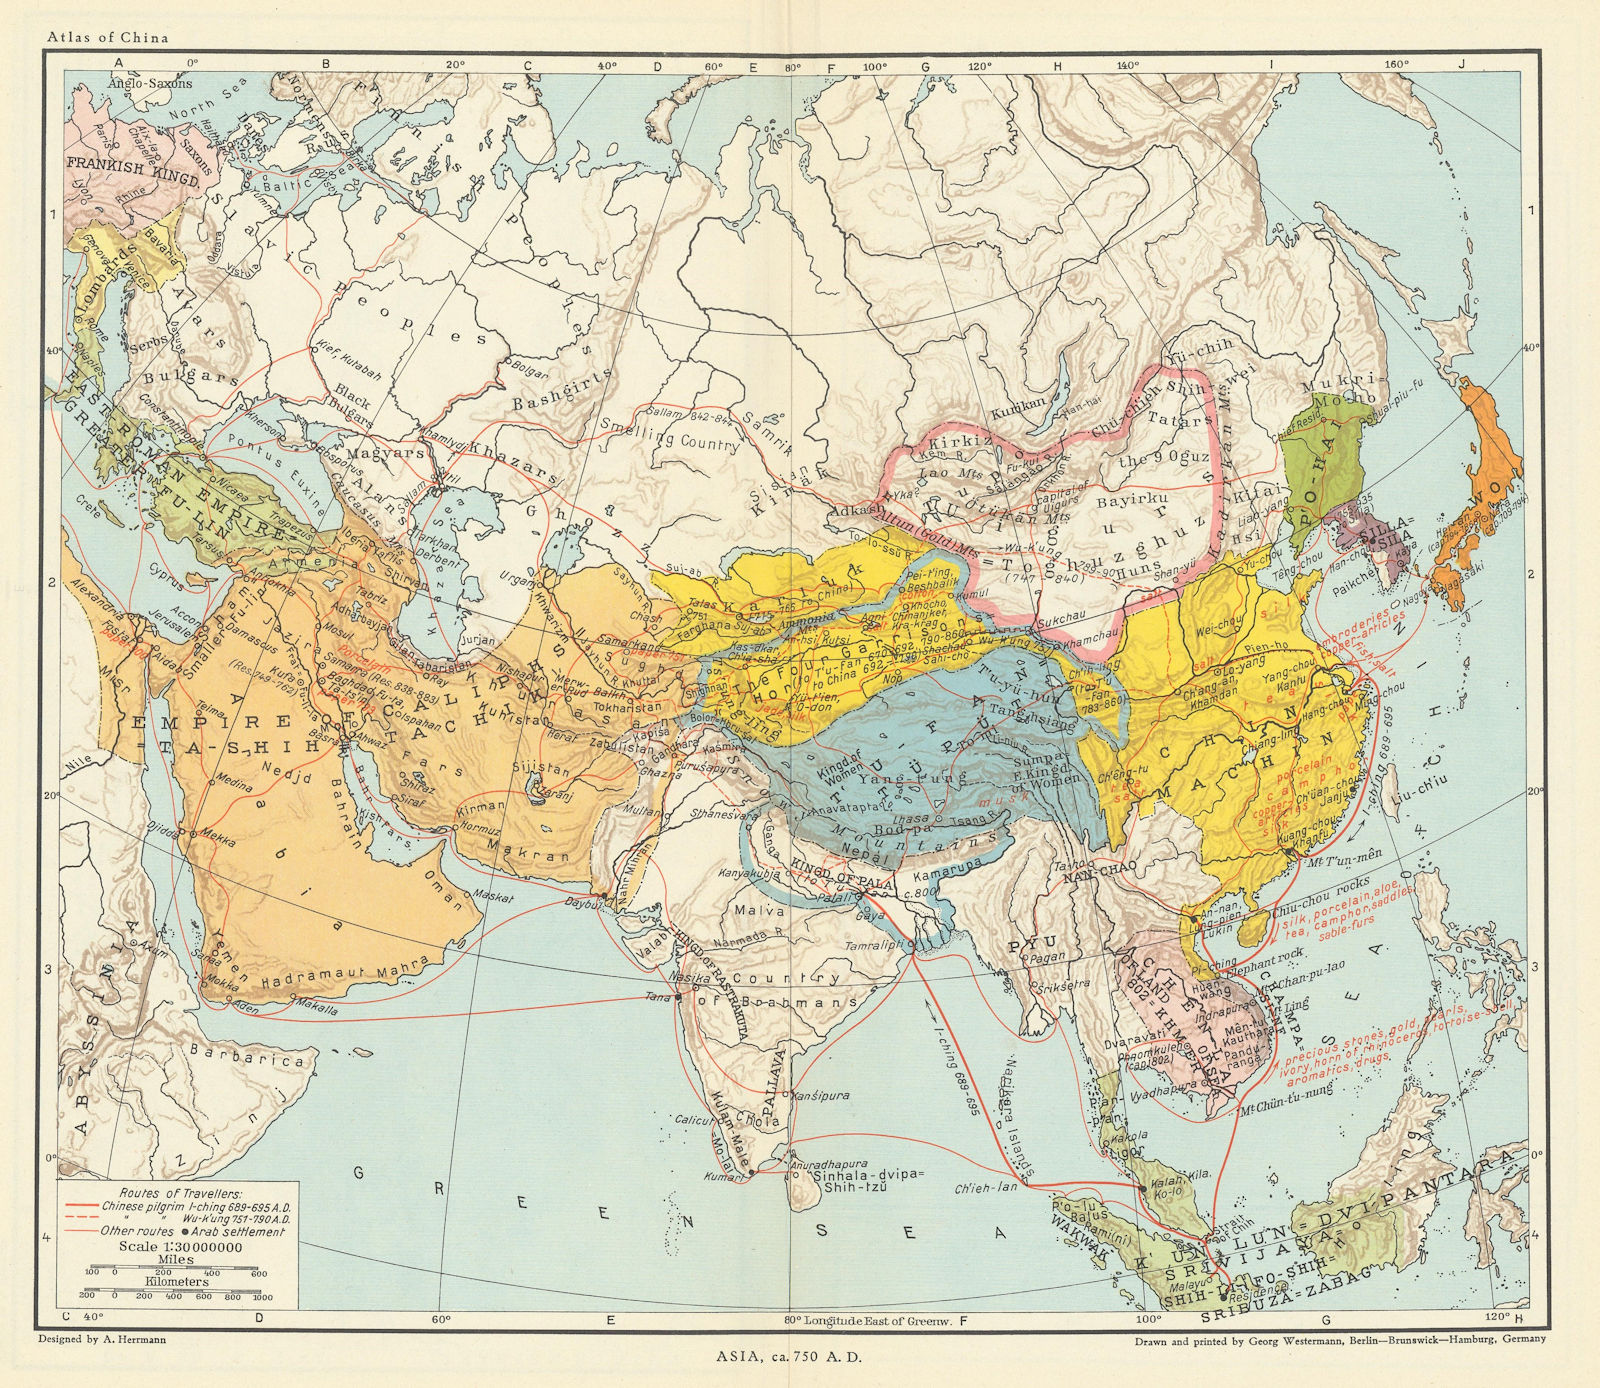 Asia c750AD Chin Machin Chen-la Tu-fan Caliphs Empire pilgrim routes 1935 map